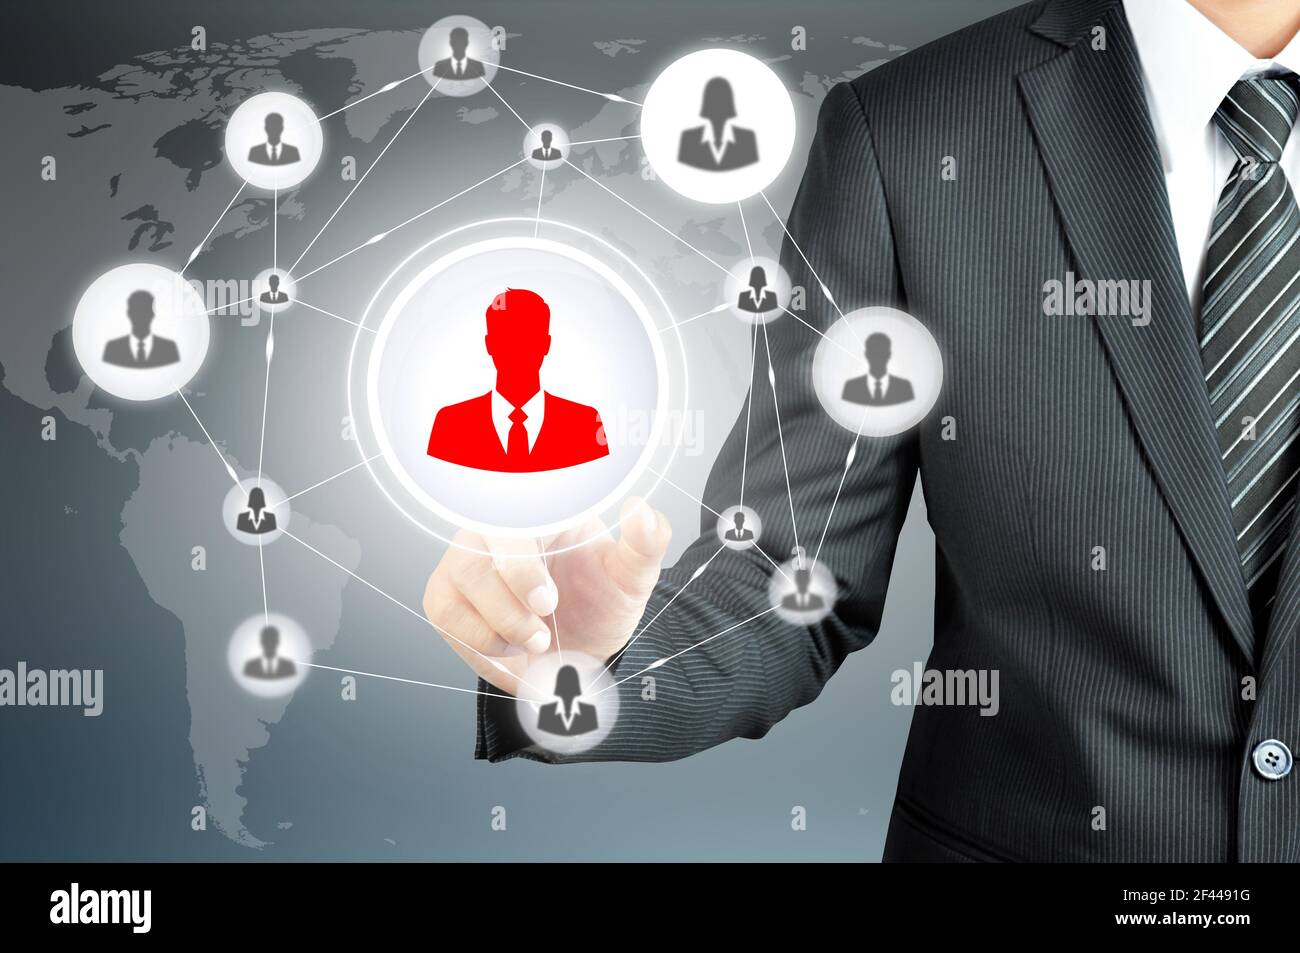 Hand zeigt auf Geschäftsmann Symbol in der Mitte, die miteinander als Netzwerk verbunden - HR, HRM, MLM, Teamwork & Leadership-Konzept Stockfoto